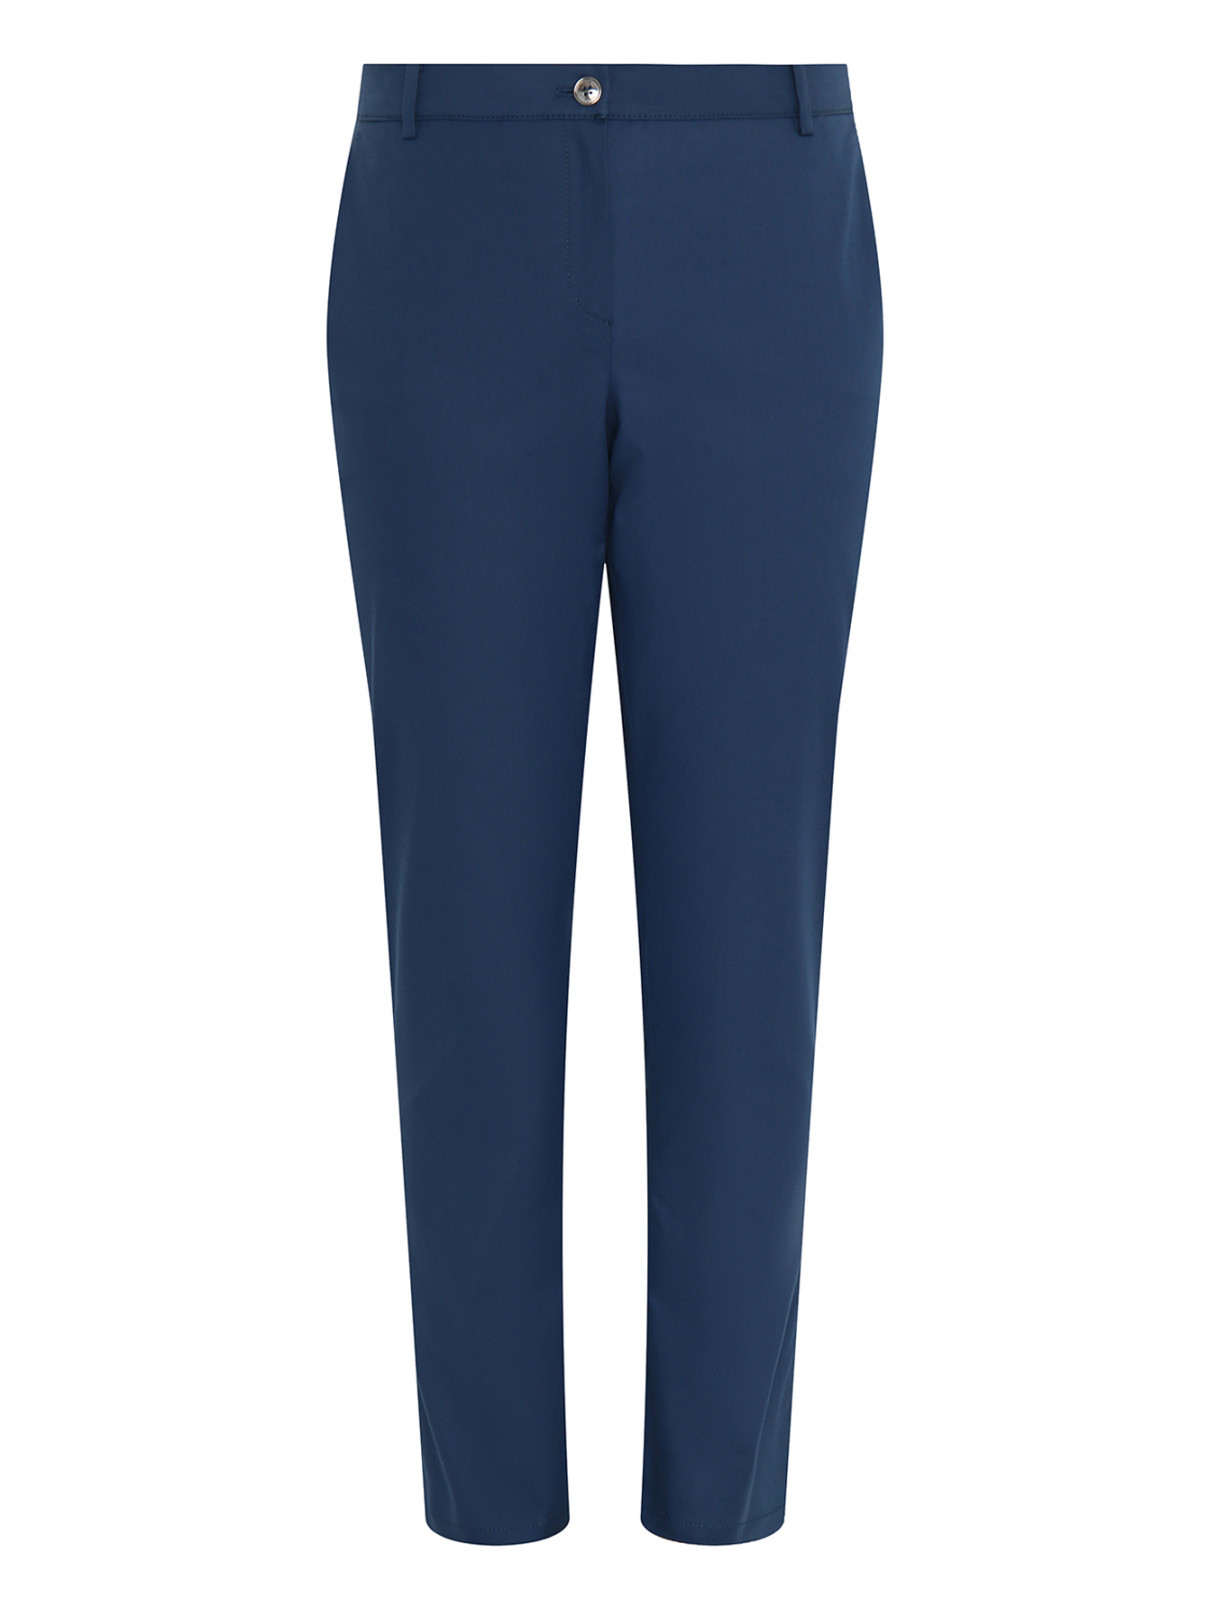 Укороченные брюки из хлопка Voyage by Marina Rinaldi  –  Общий вид  – Цвет:  Синий